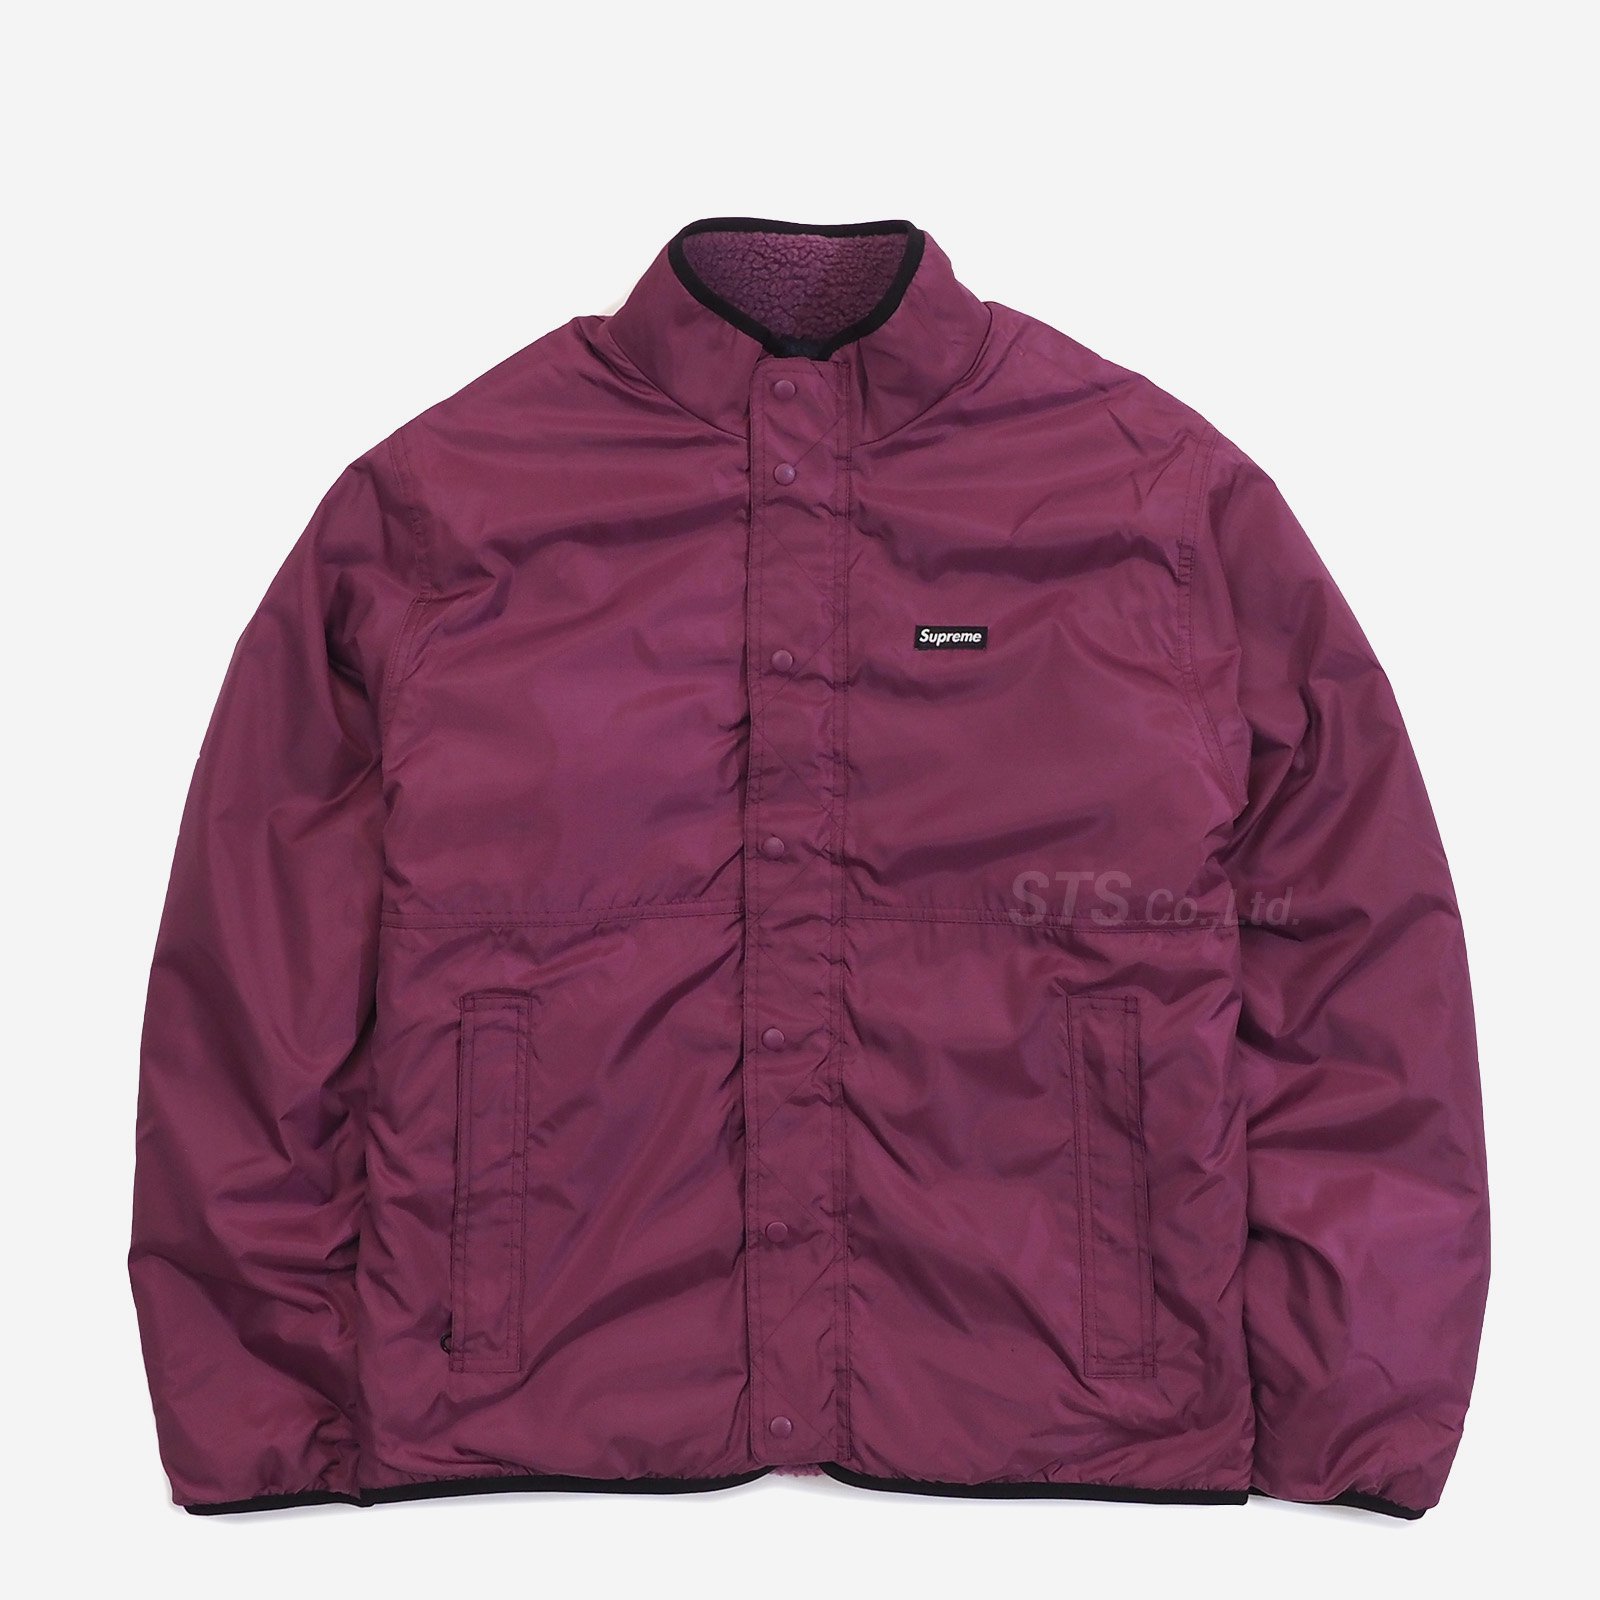 Supreme - Reversible Colorblocked Fleece Jacket - UG.SHAFT